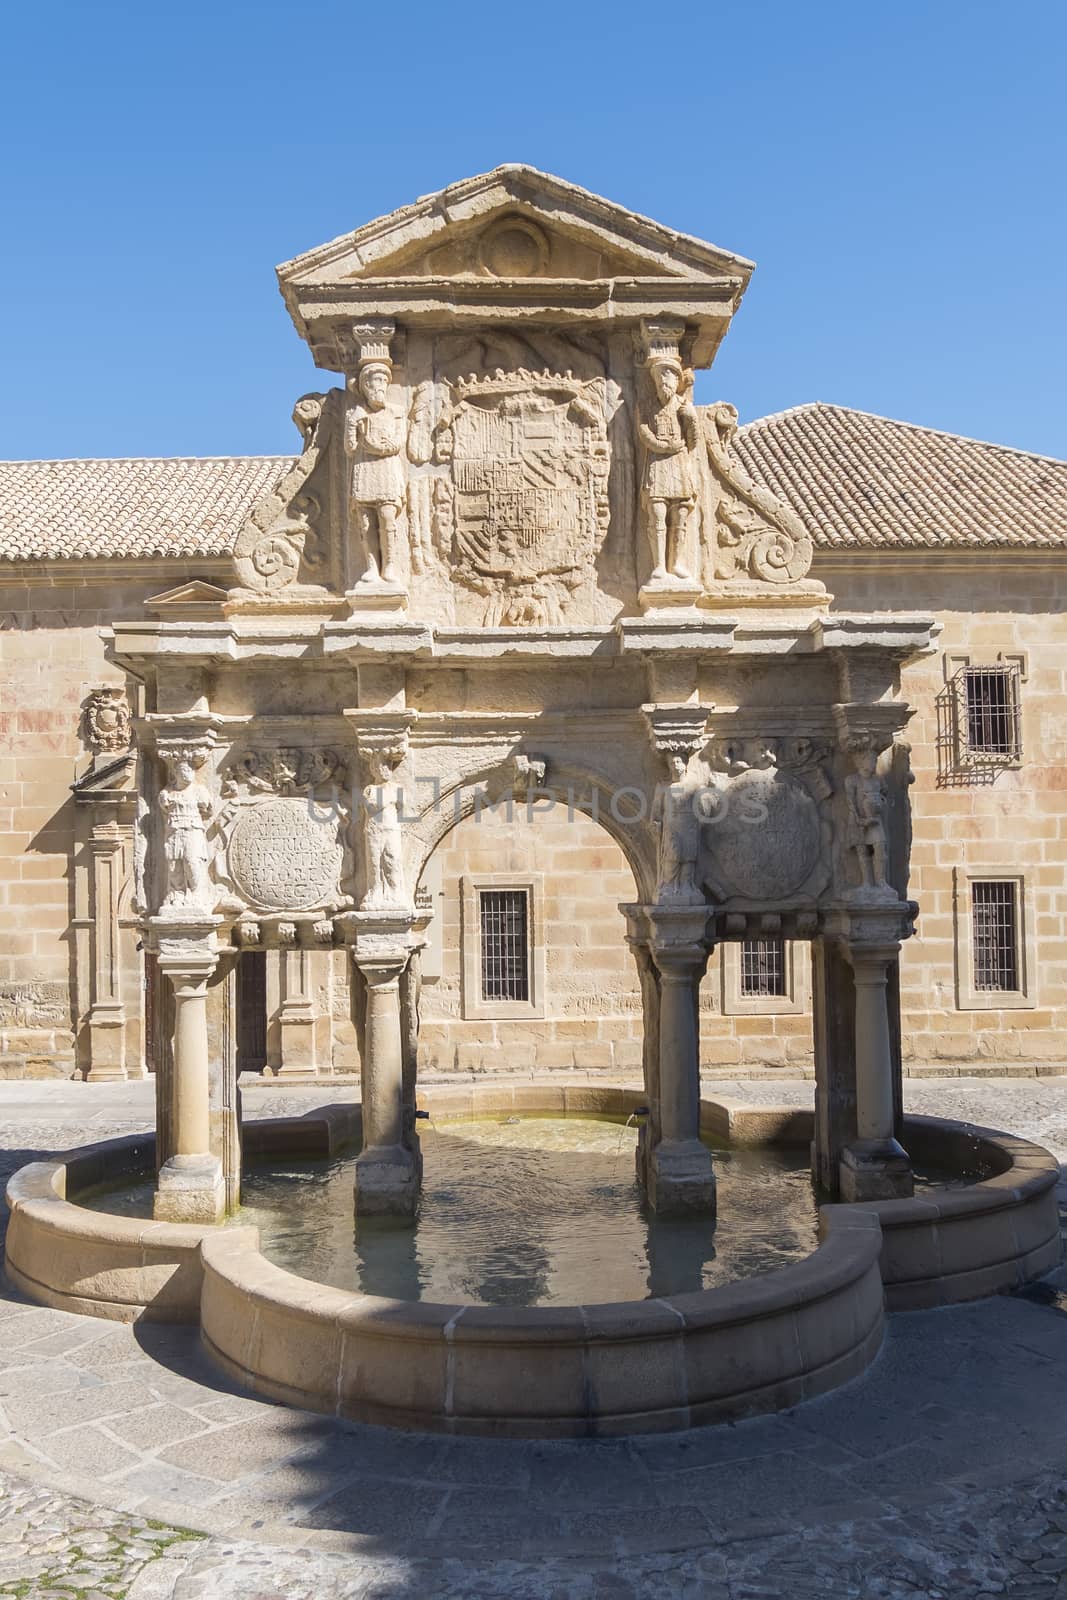 Santa Maria Fountain in Baeza, Jaen, Spain